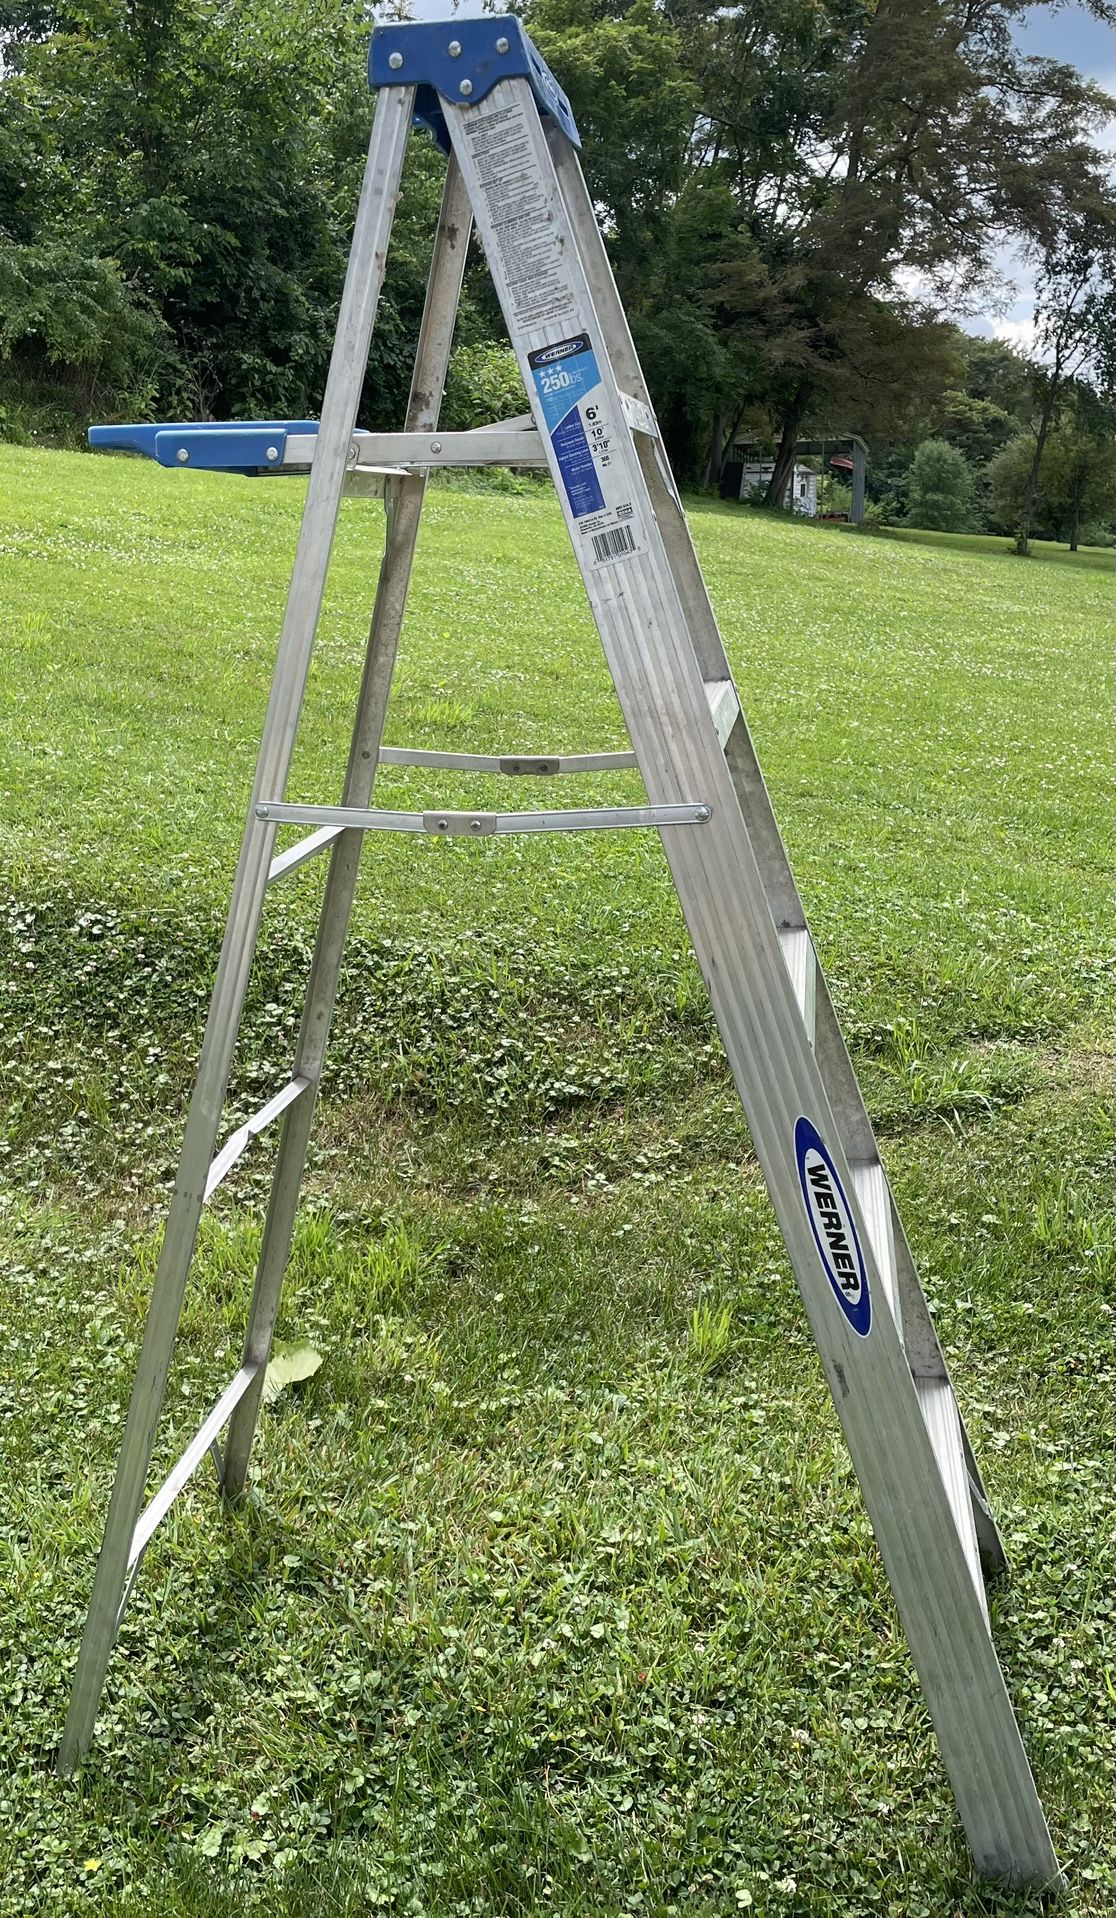 6’ Foot Werner Step Ladder 10’ Foot Reach.